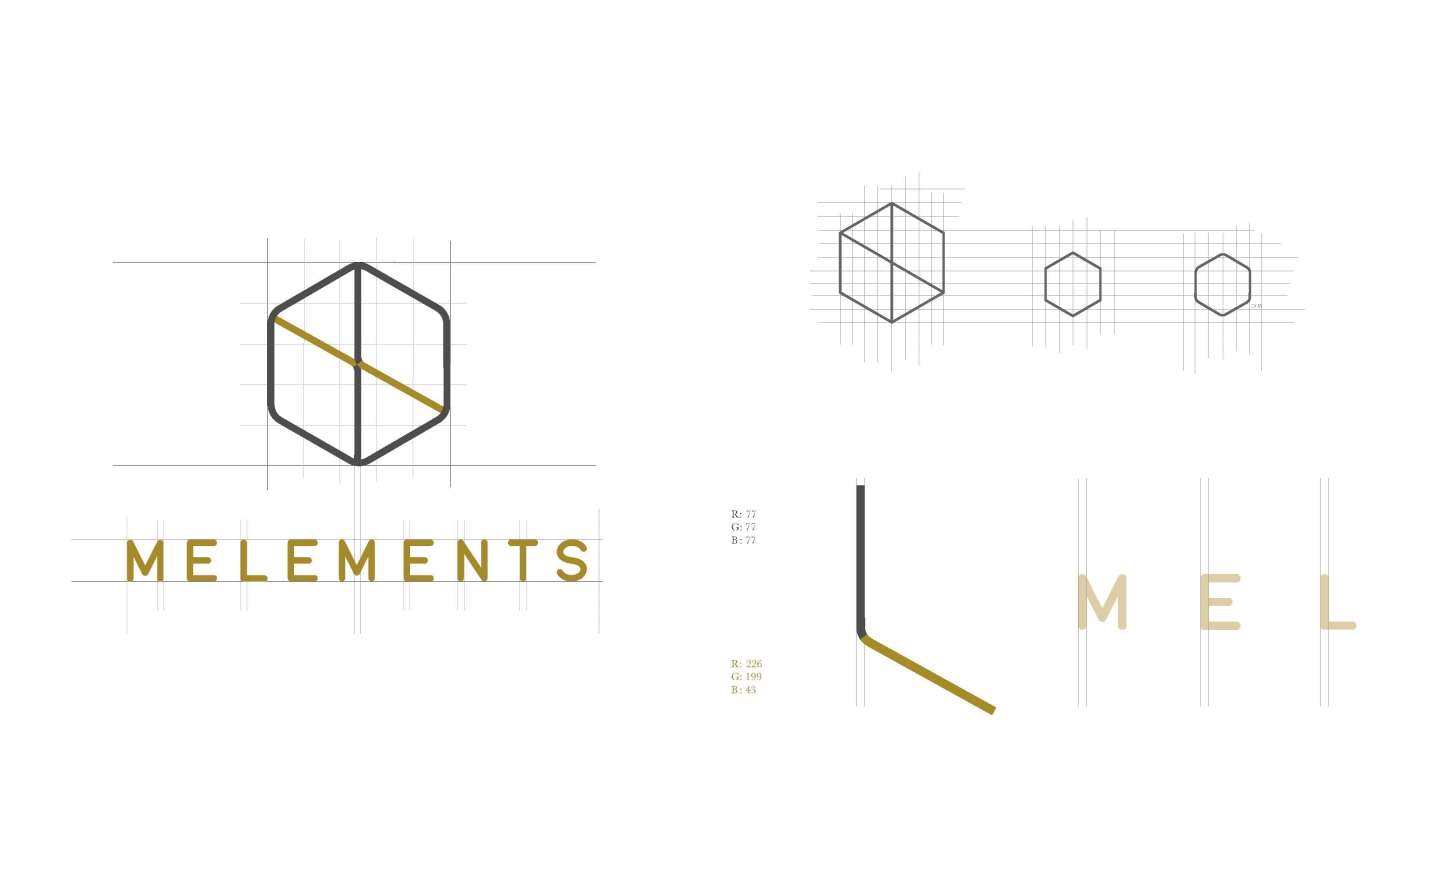 Elements Branding